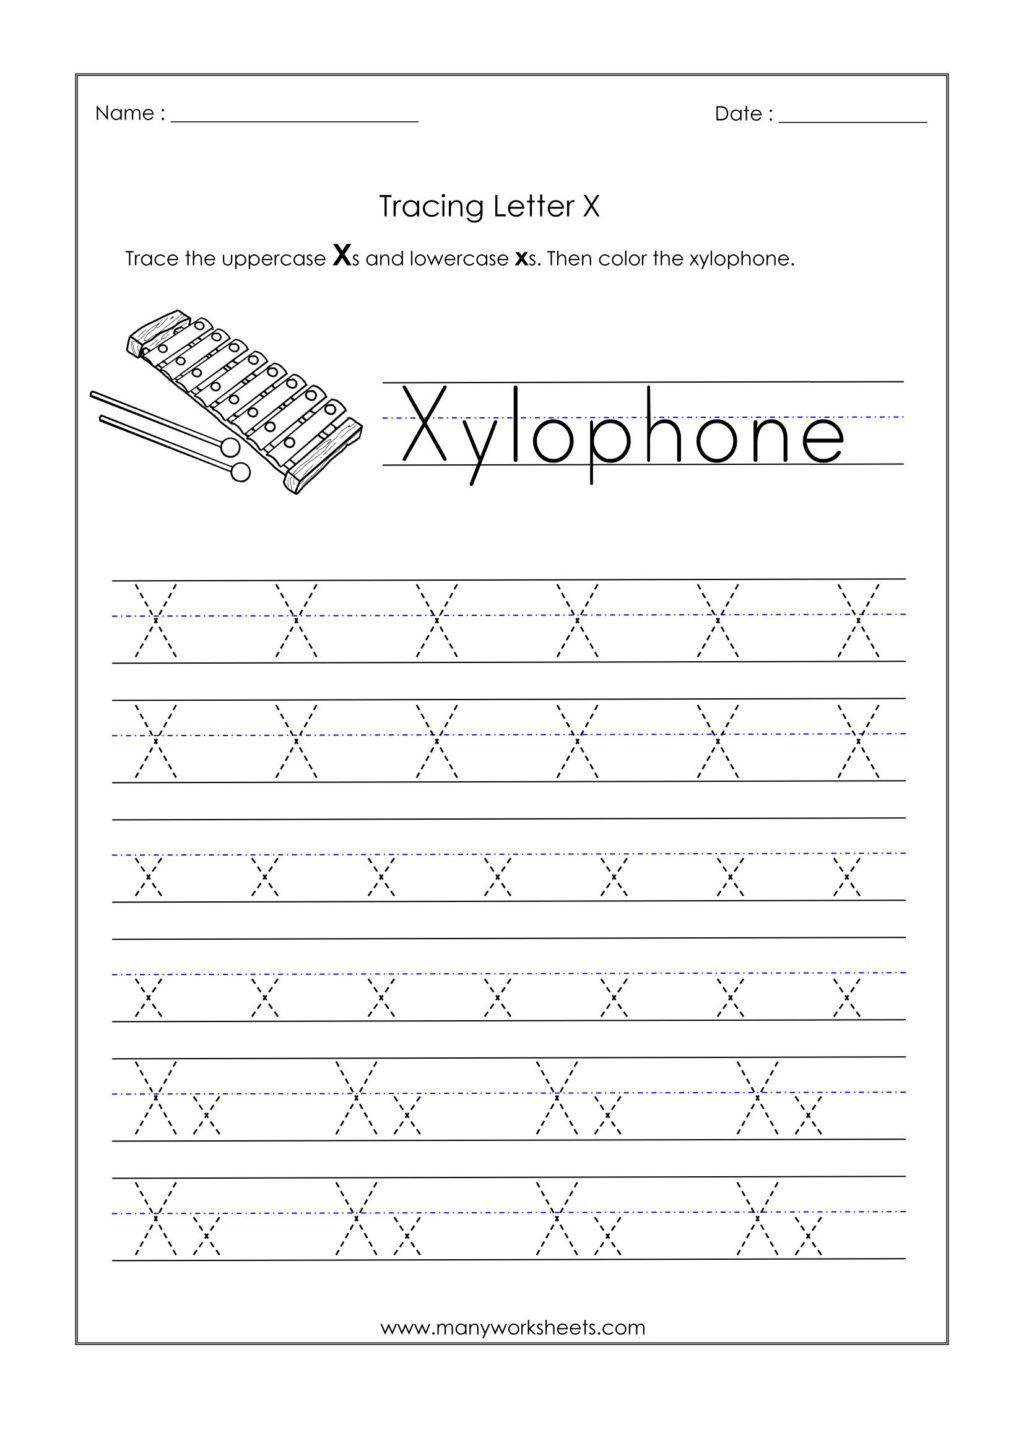 Worksheet ~ Alphabetiting Sheets Letter X Tracing Worksheet throughout Letter X Tracing Worksheets Preschool